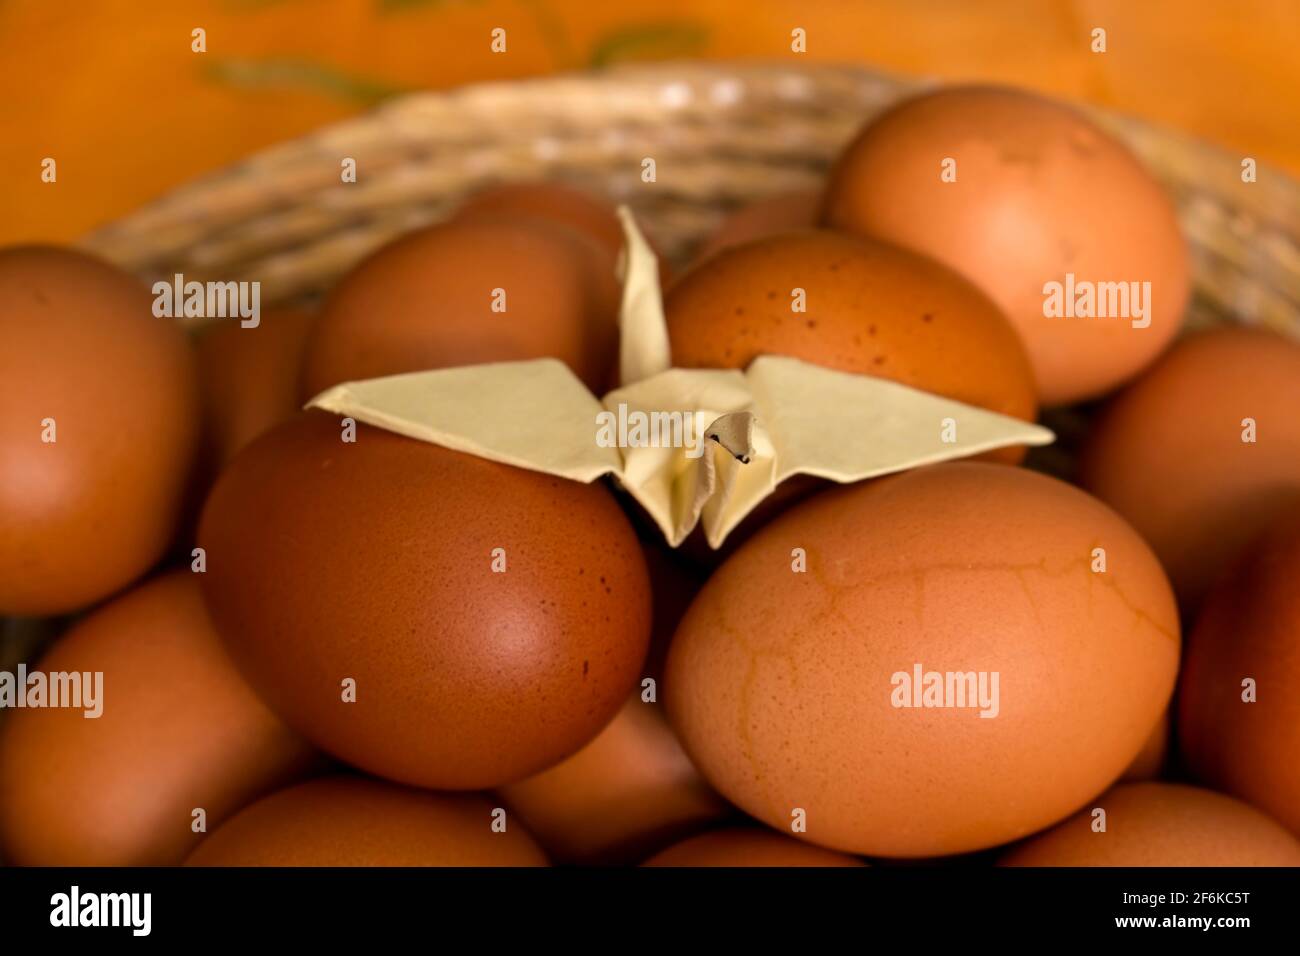 eggs in wicker basket Stock Photo